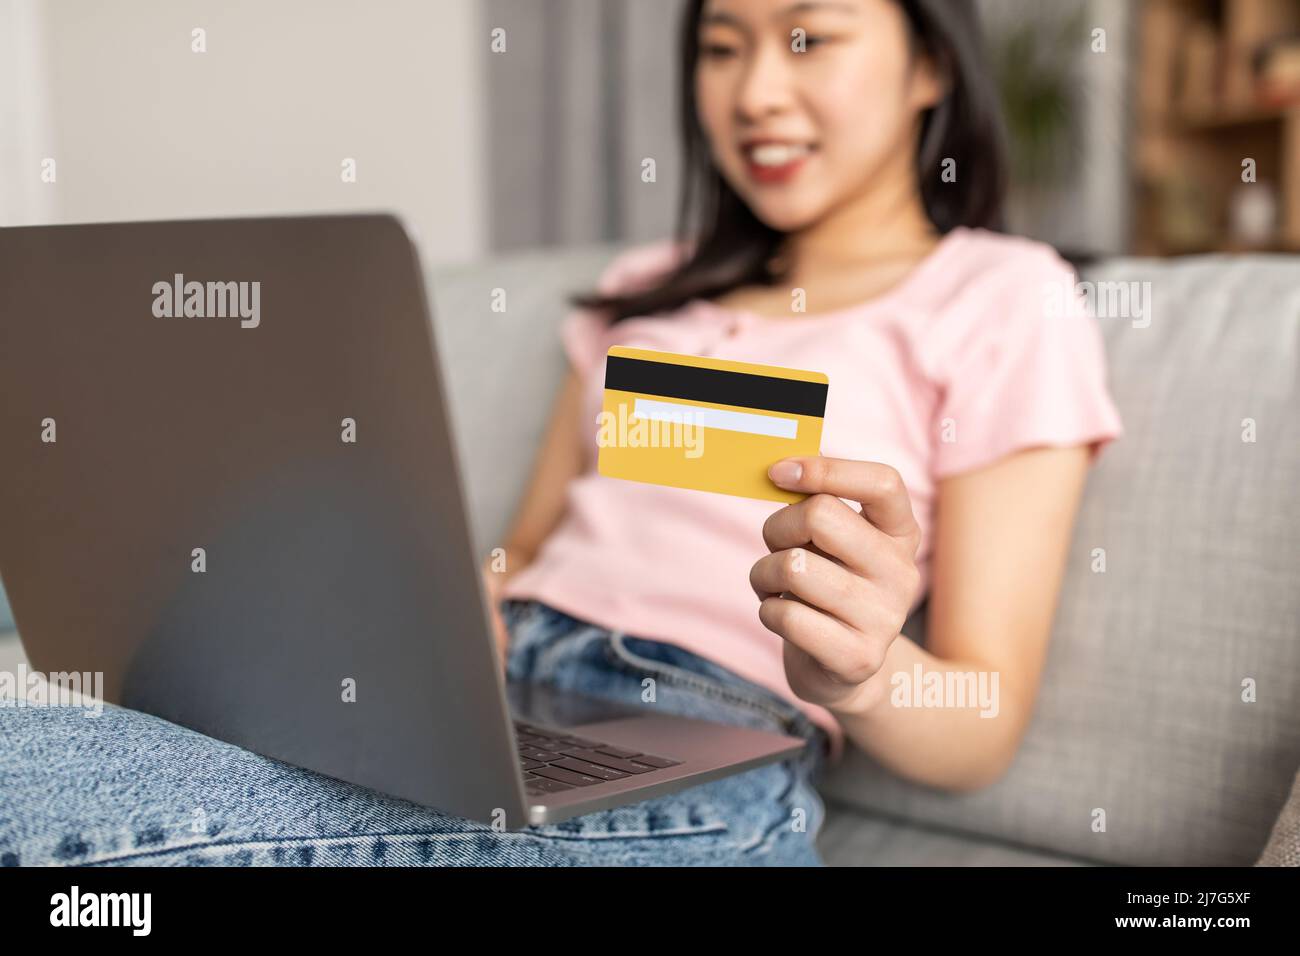 Hacer transacciones financieras. Joven dama asiática sosteniendo tarjeta de crédito, sentado en sofá con ordenador, enfoque selectivo Foto de stock